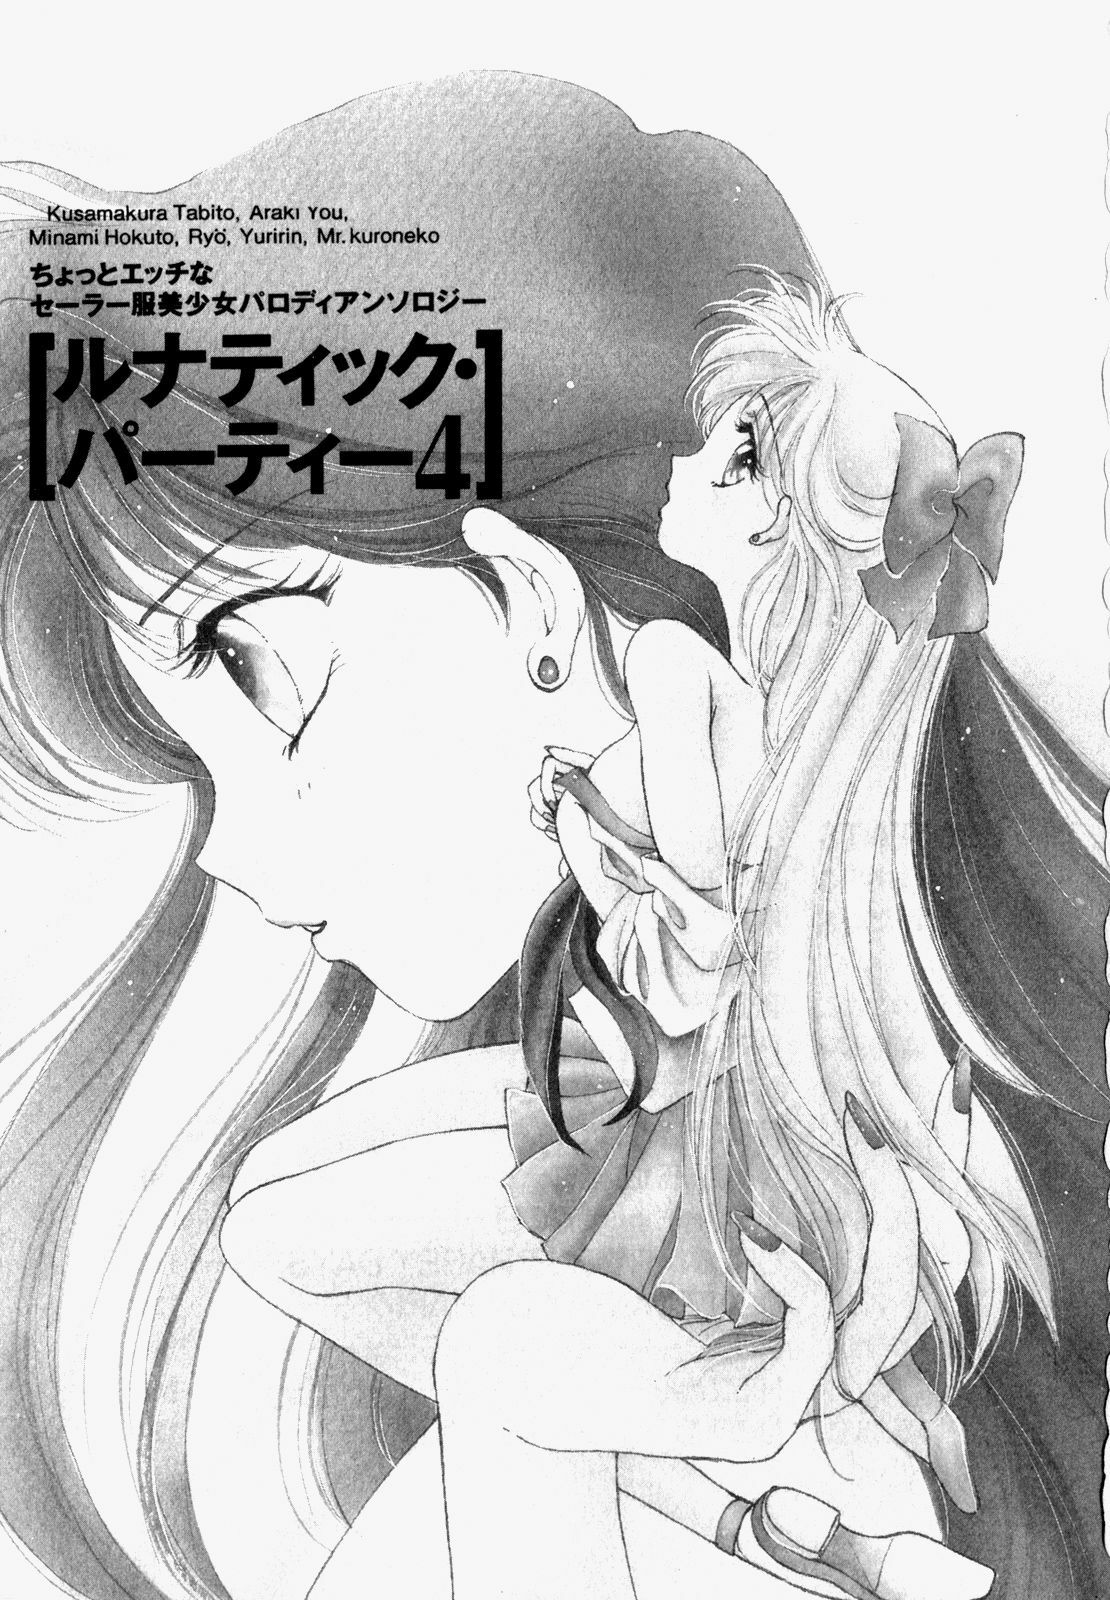 [Anthology] Lunatic Party 4 (Bishoujo Senshi Sailor Moon) page 2 full